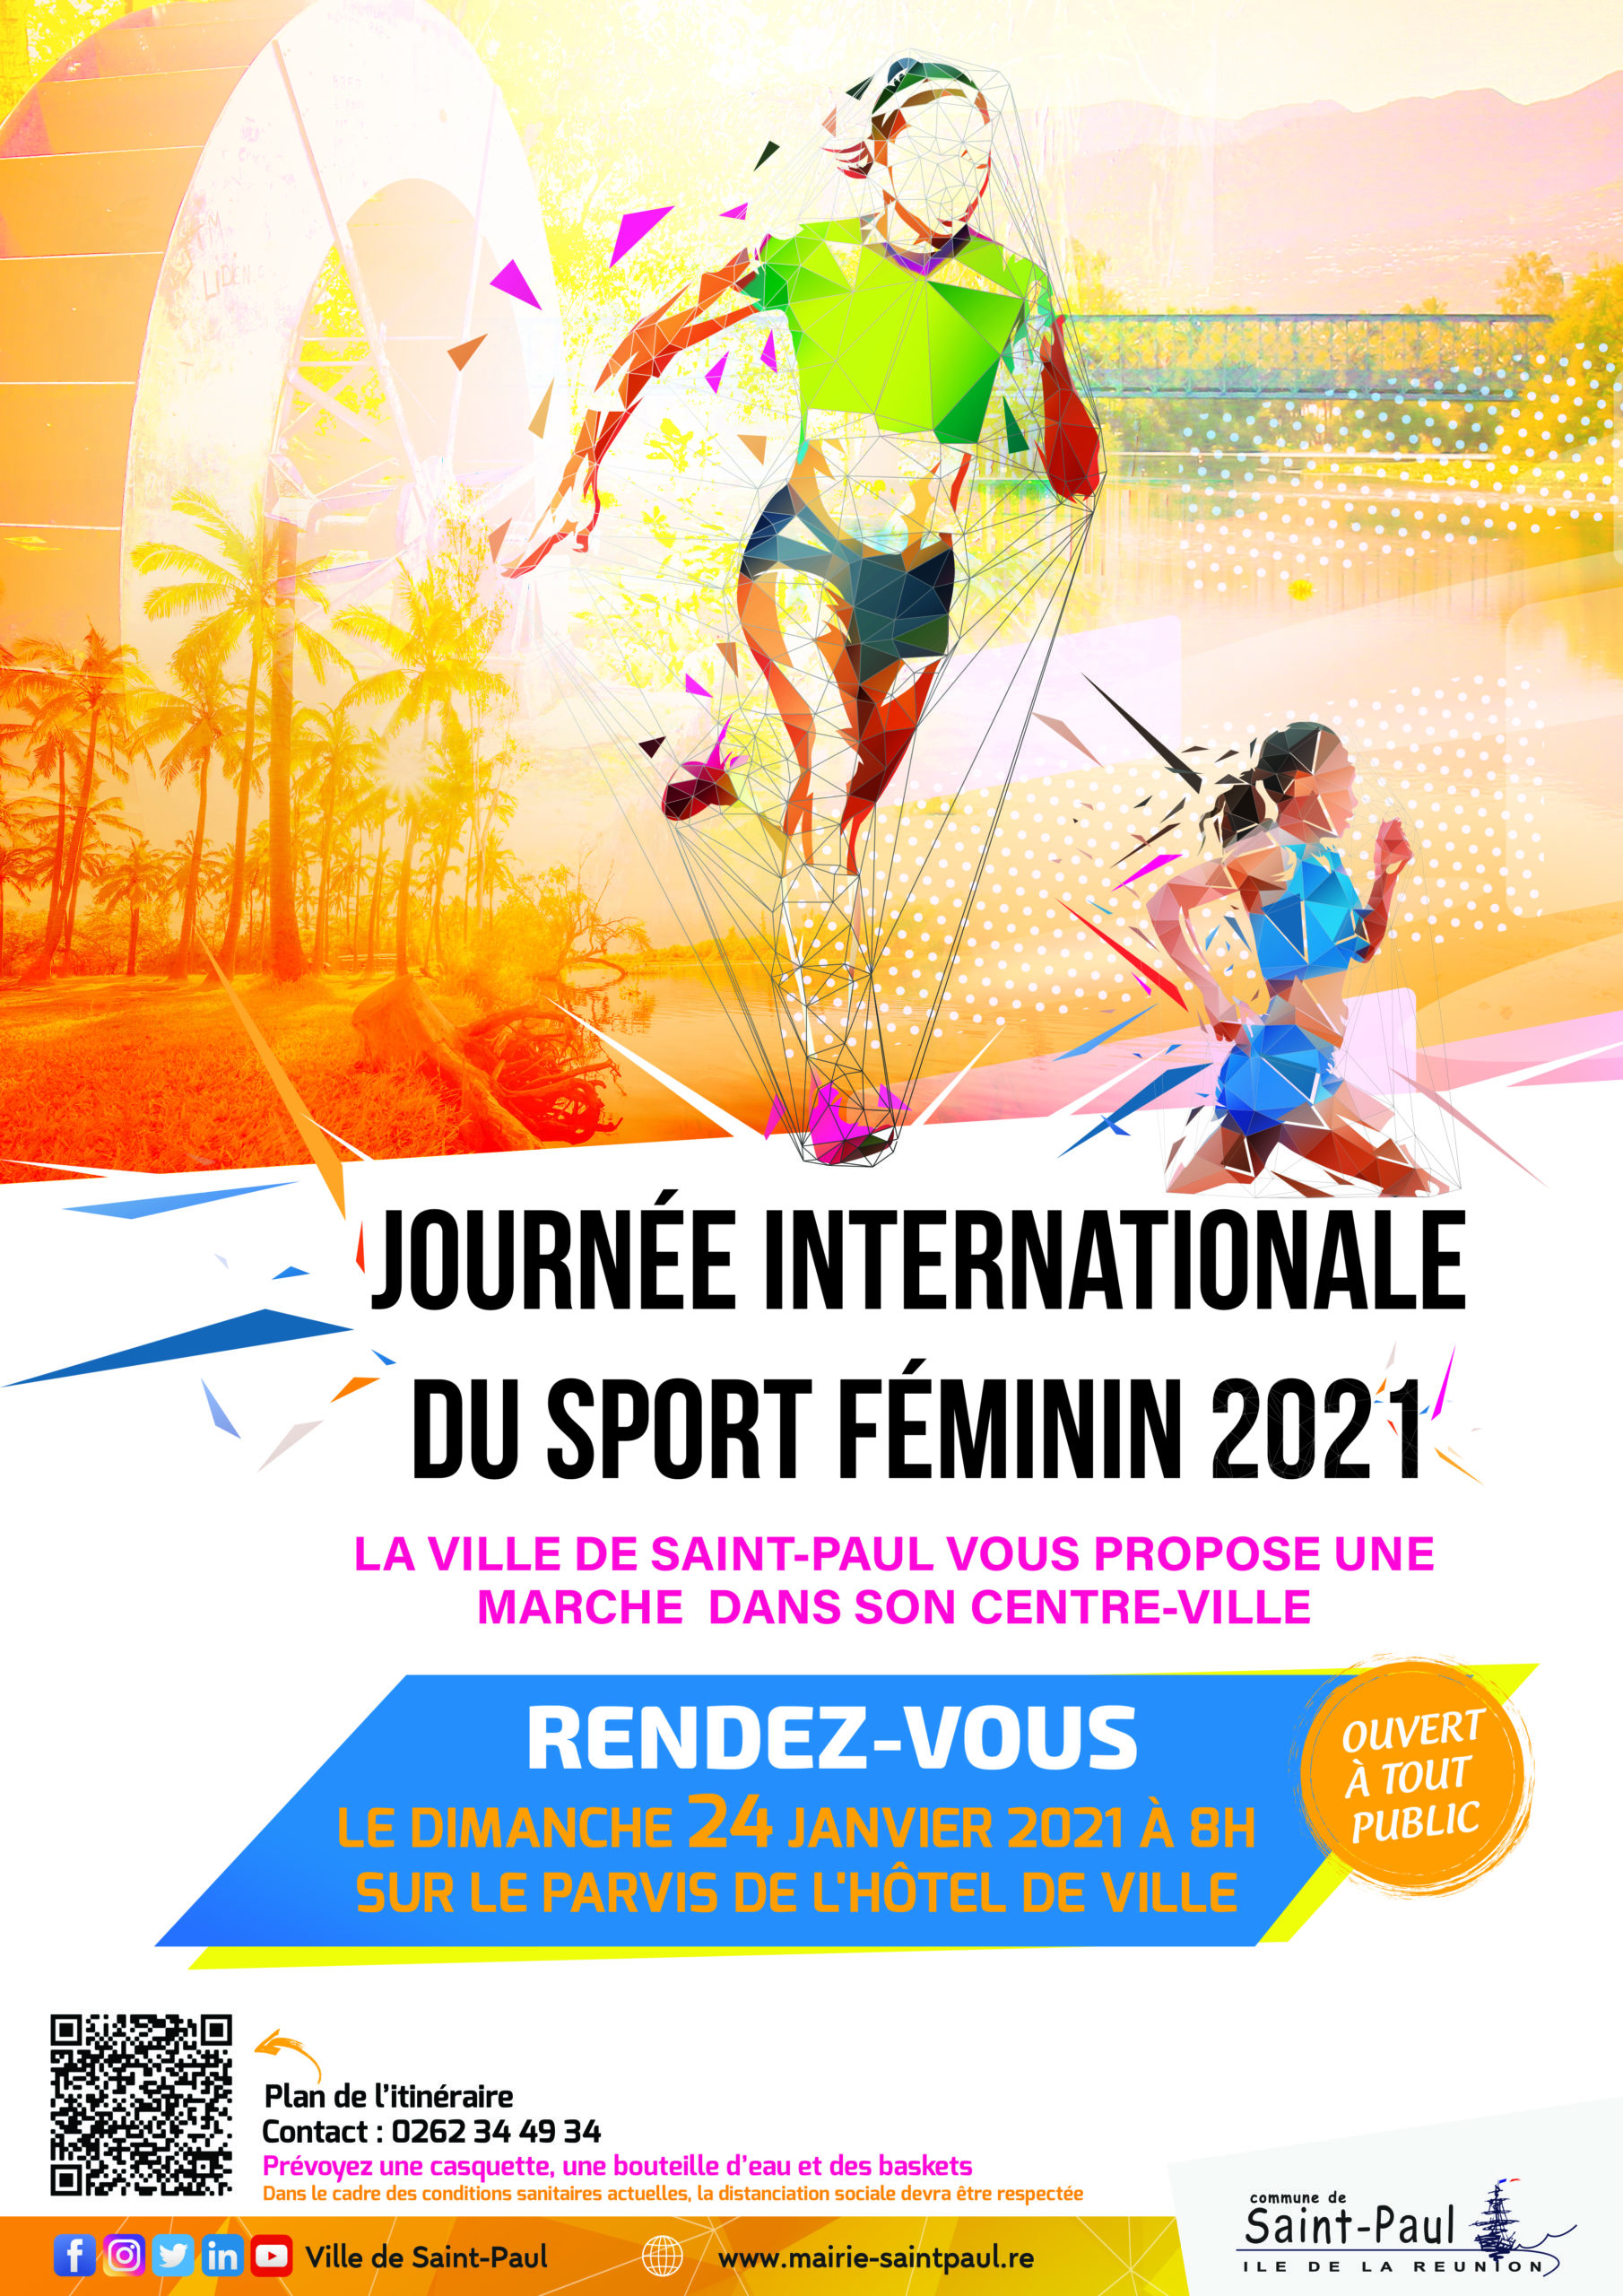 Saint-Paul met à l’honneur sa Journée internationale du sport féminin